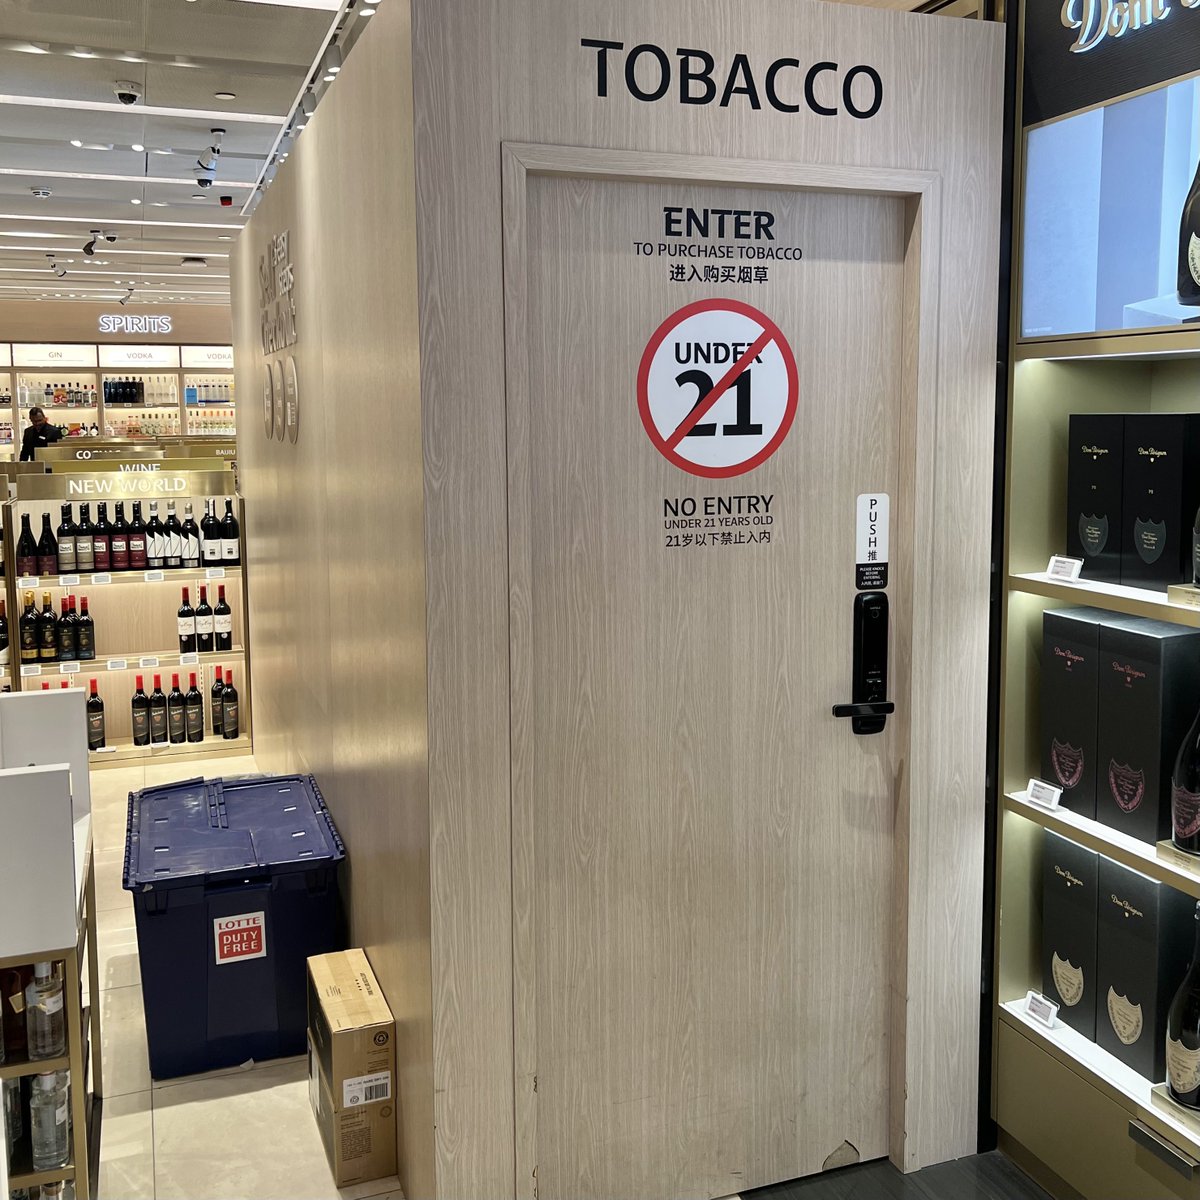 Dapet titipan temen, baru ngeh sekarang produk tembakau di Singapura sudah tidak lagi dipajang & dapat terlihat di dalam toko.

Semua disimpan di satu ruangan khusus, dan kita masuk ambil sendiri ke dalam ruangan tersebut. Semua kotak rokok dibuat seragam satu warna, dengan…